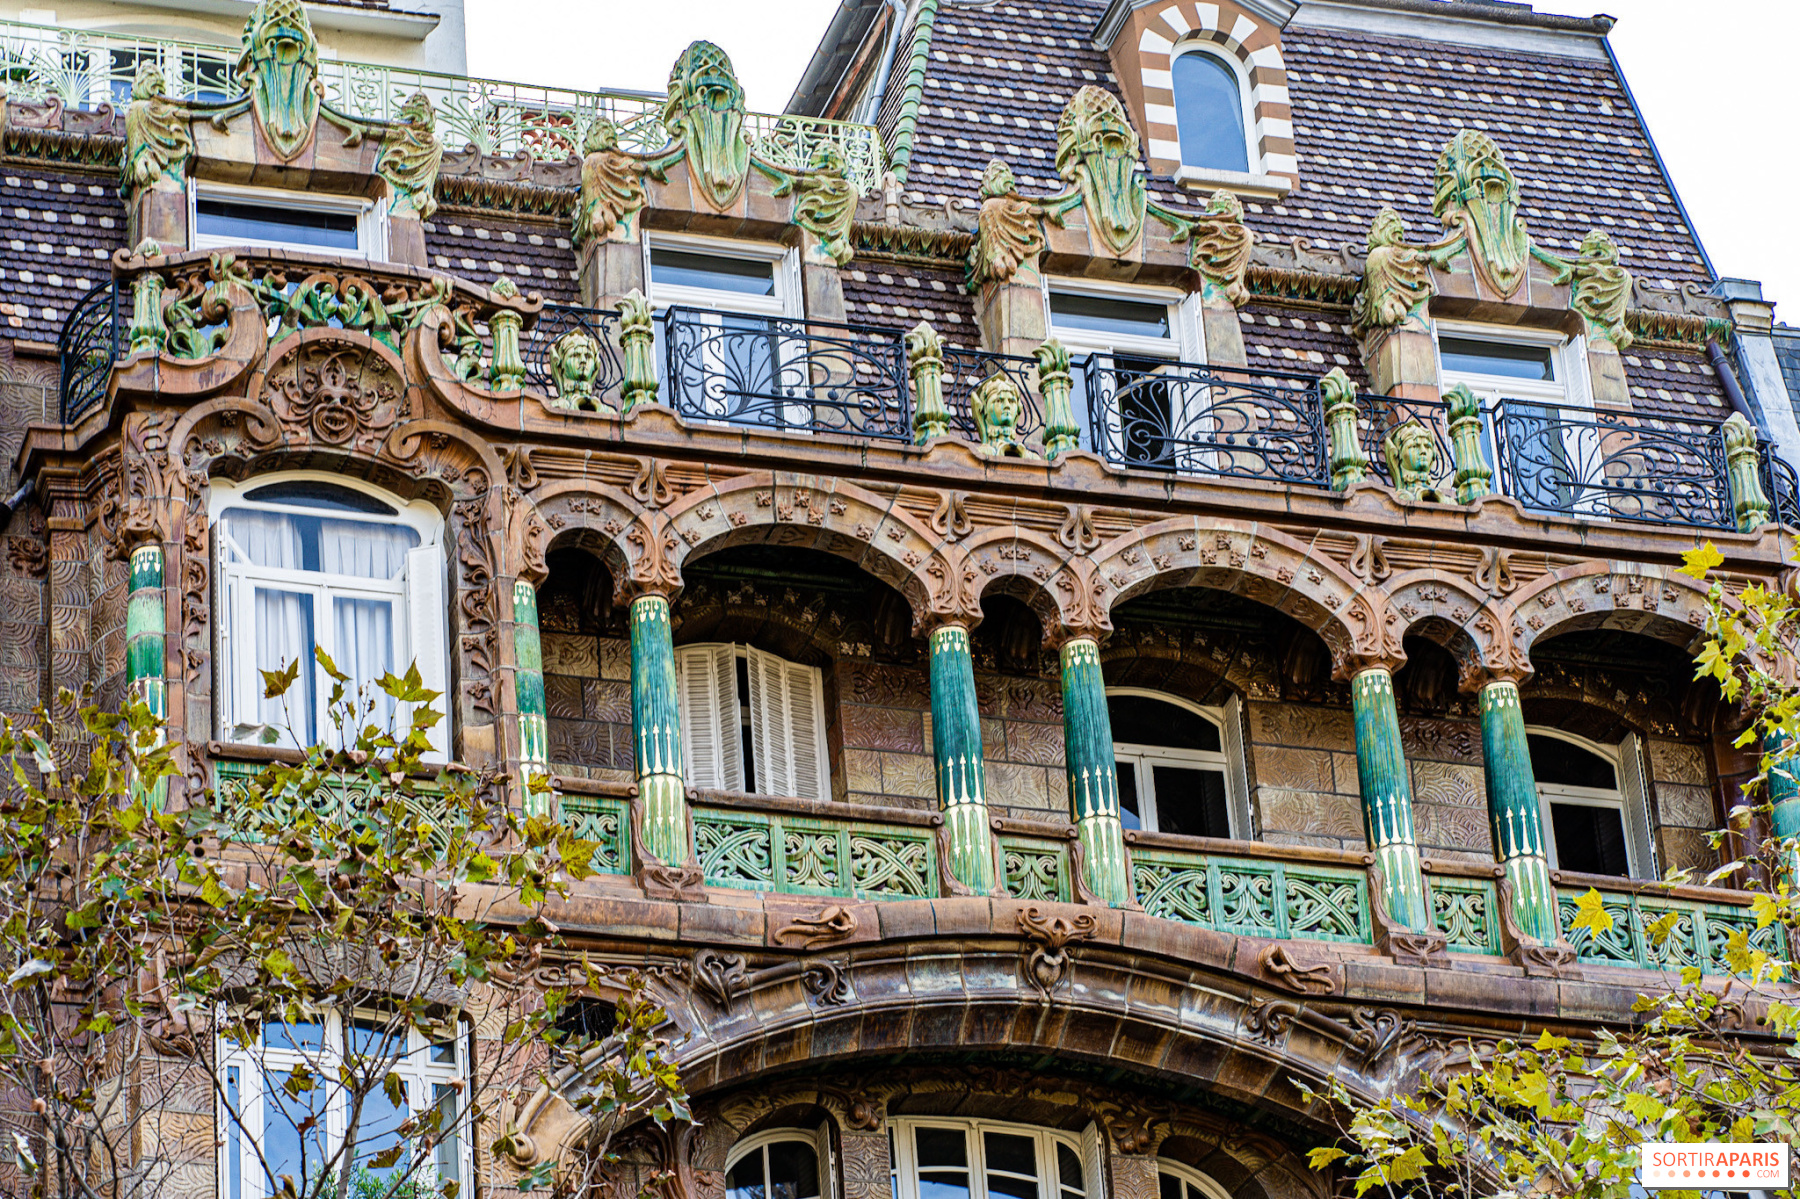 Art Nouveau and Art deco architecture walk in the 16th Paris